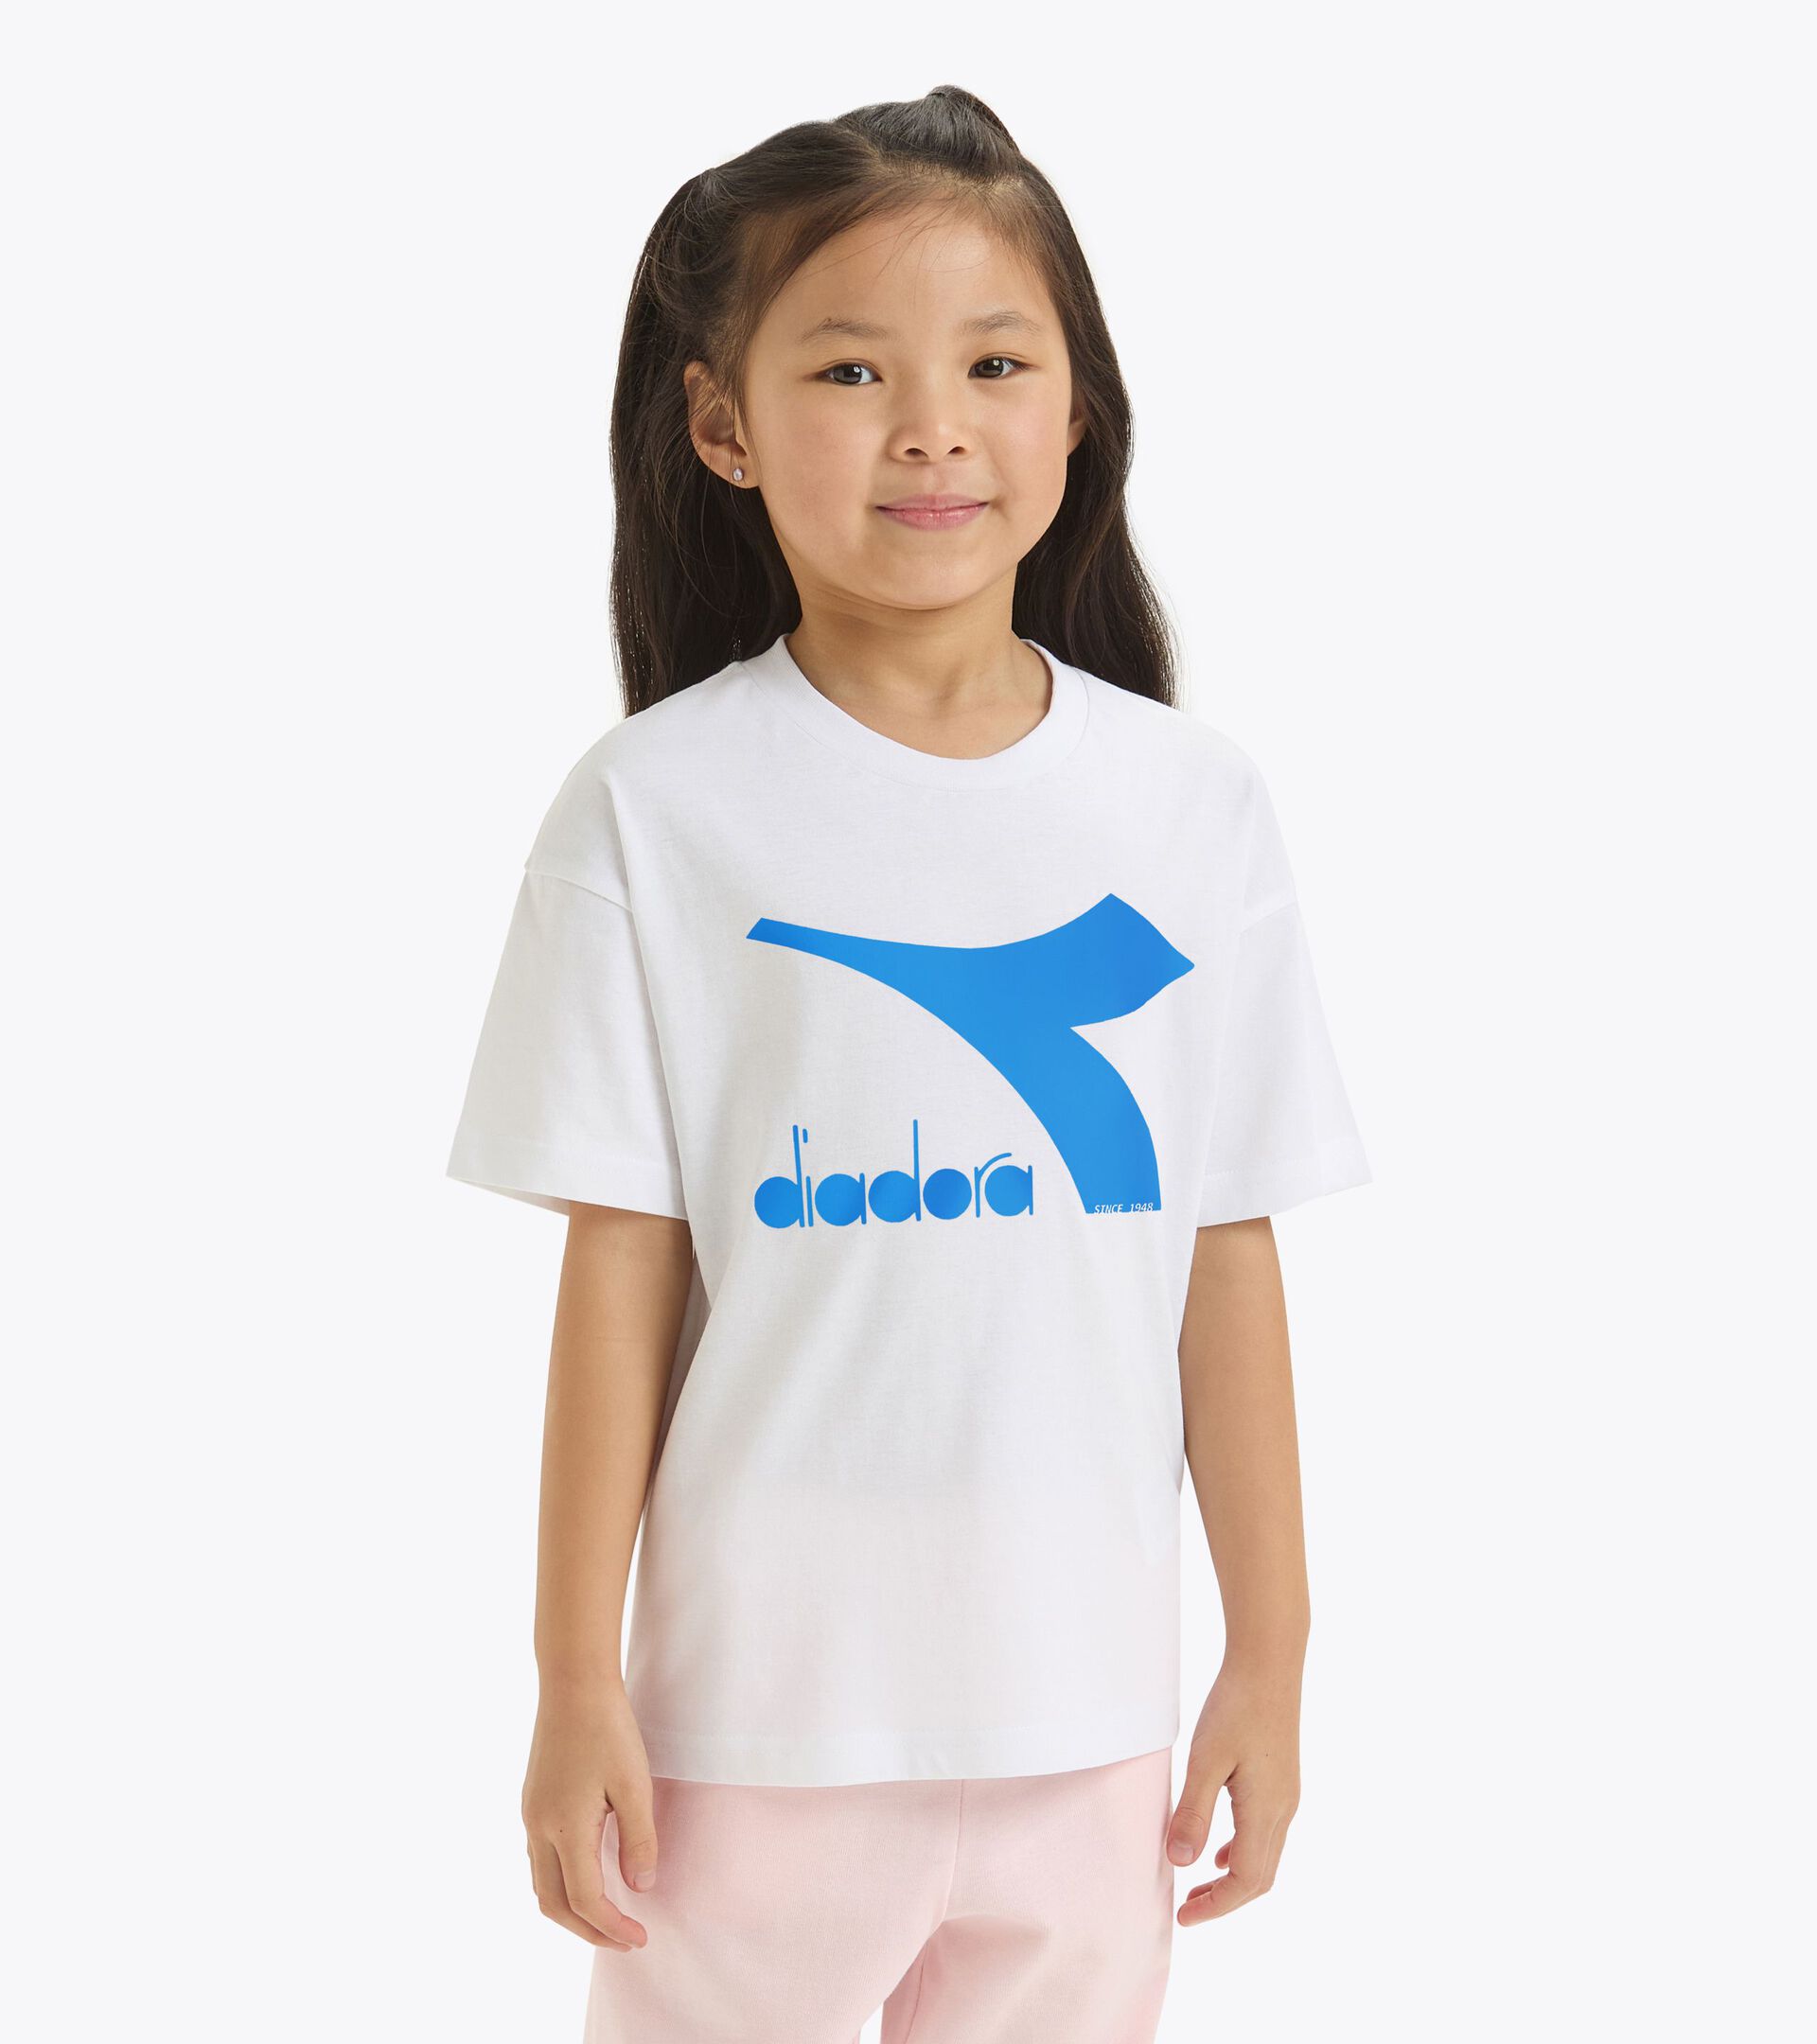 T-shirt de sport - Enfants
 JU.T-SHIRT SS BL BIANCO OTTICO/BLU PRINCIPESSA - Diadora